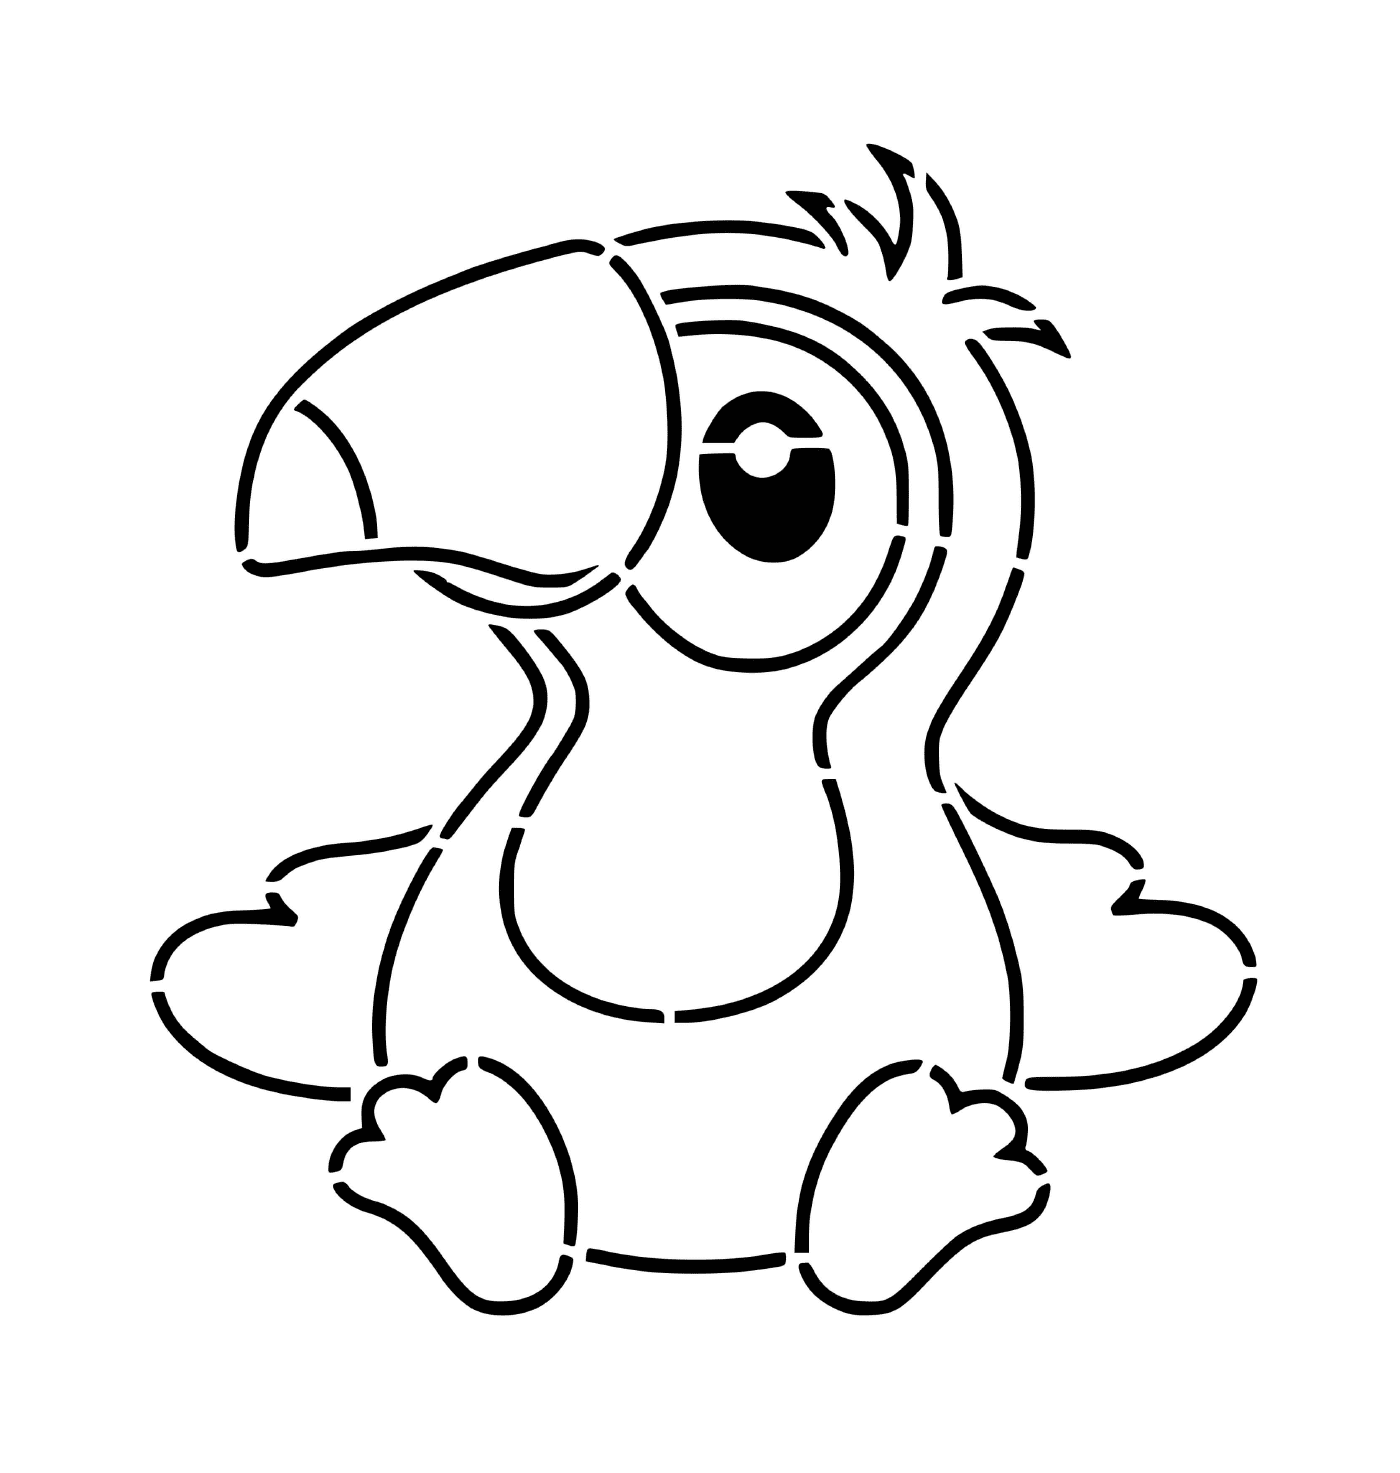  Bambino toucano 